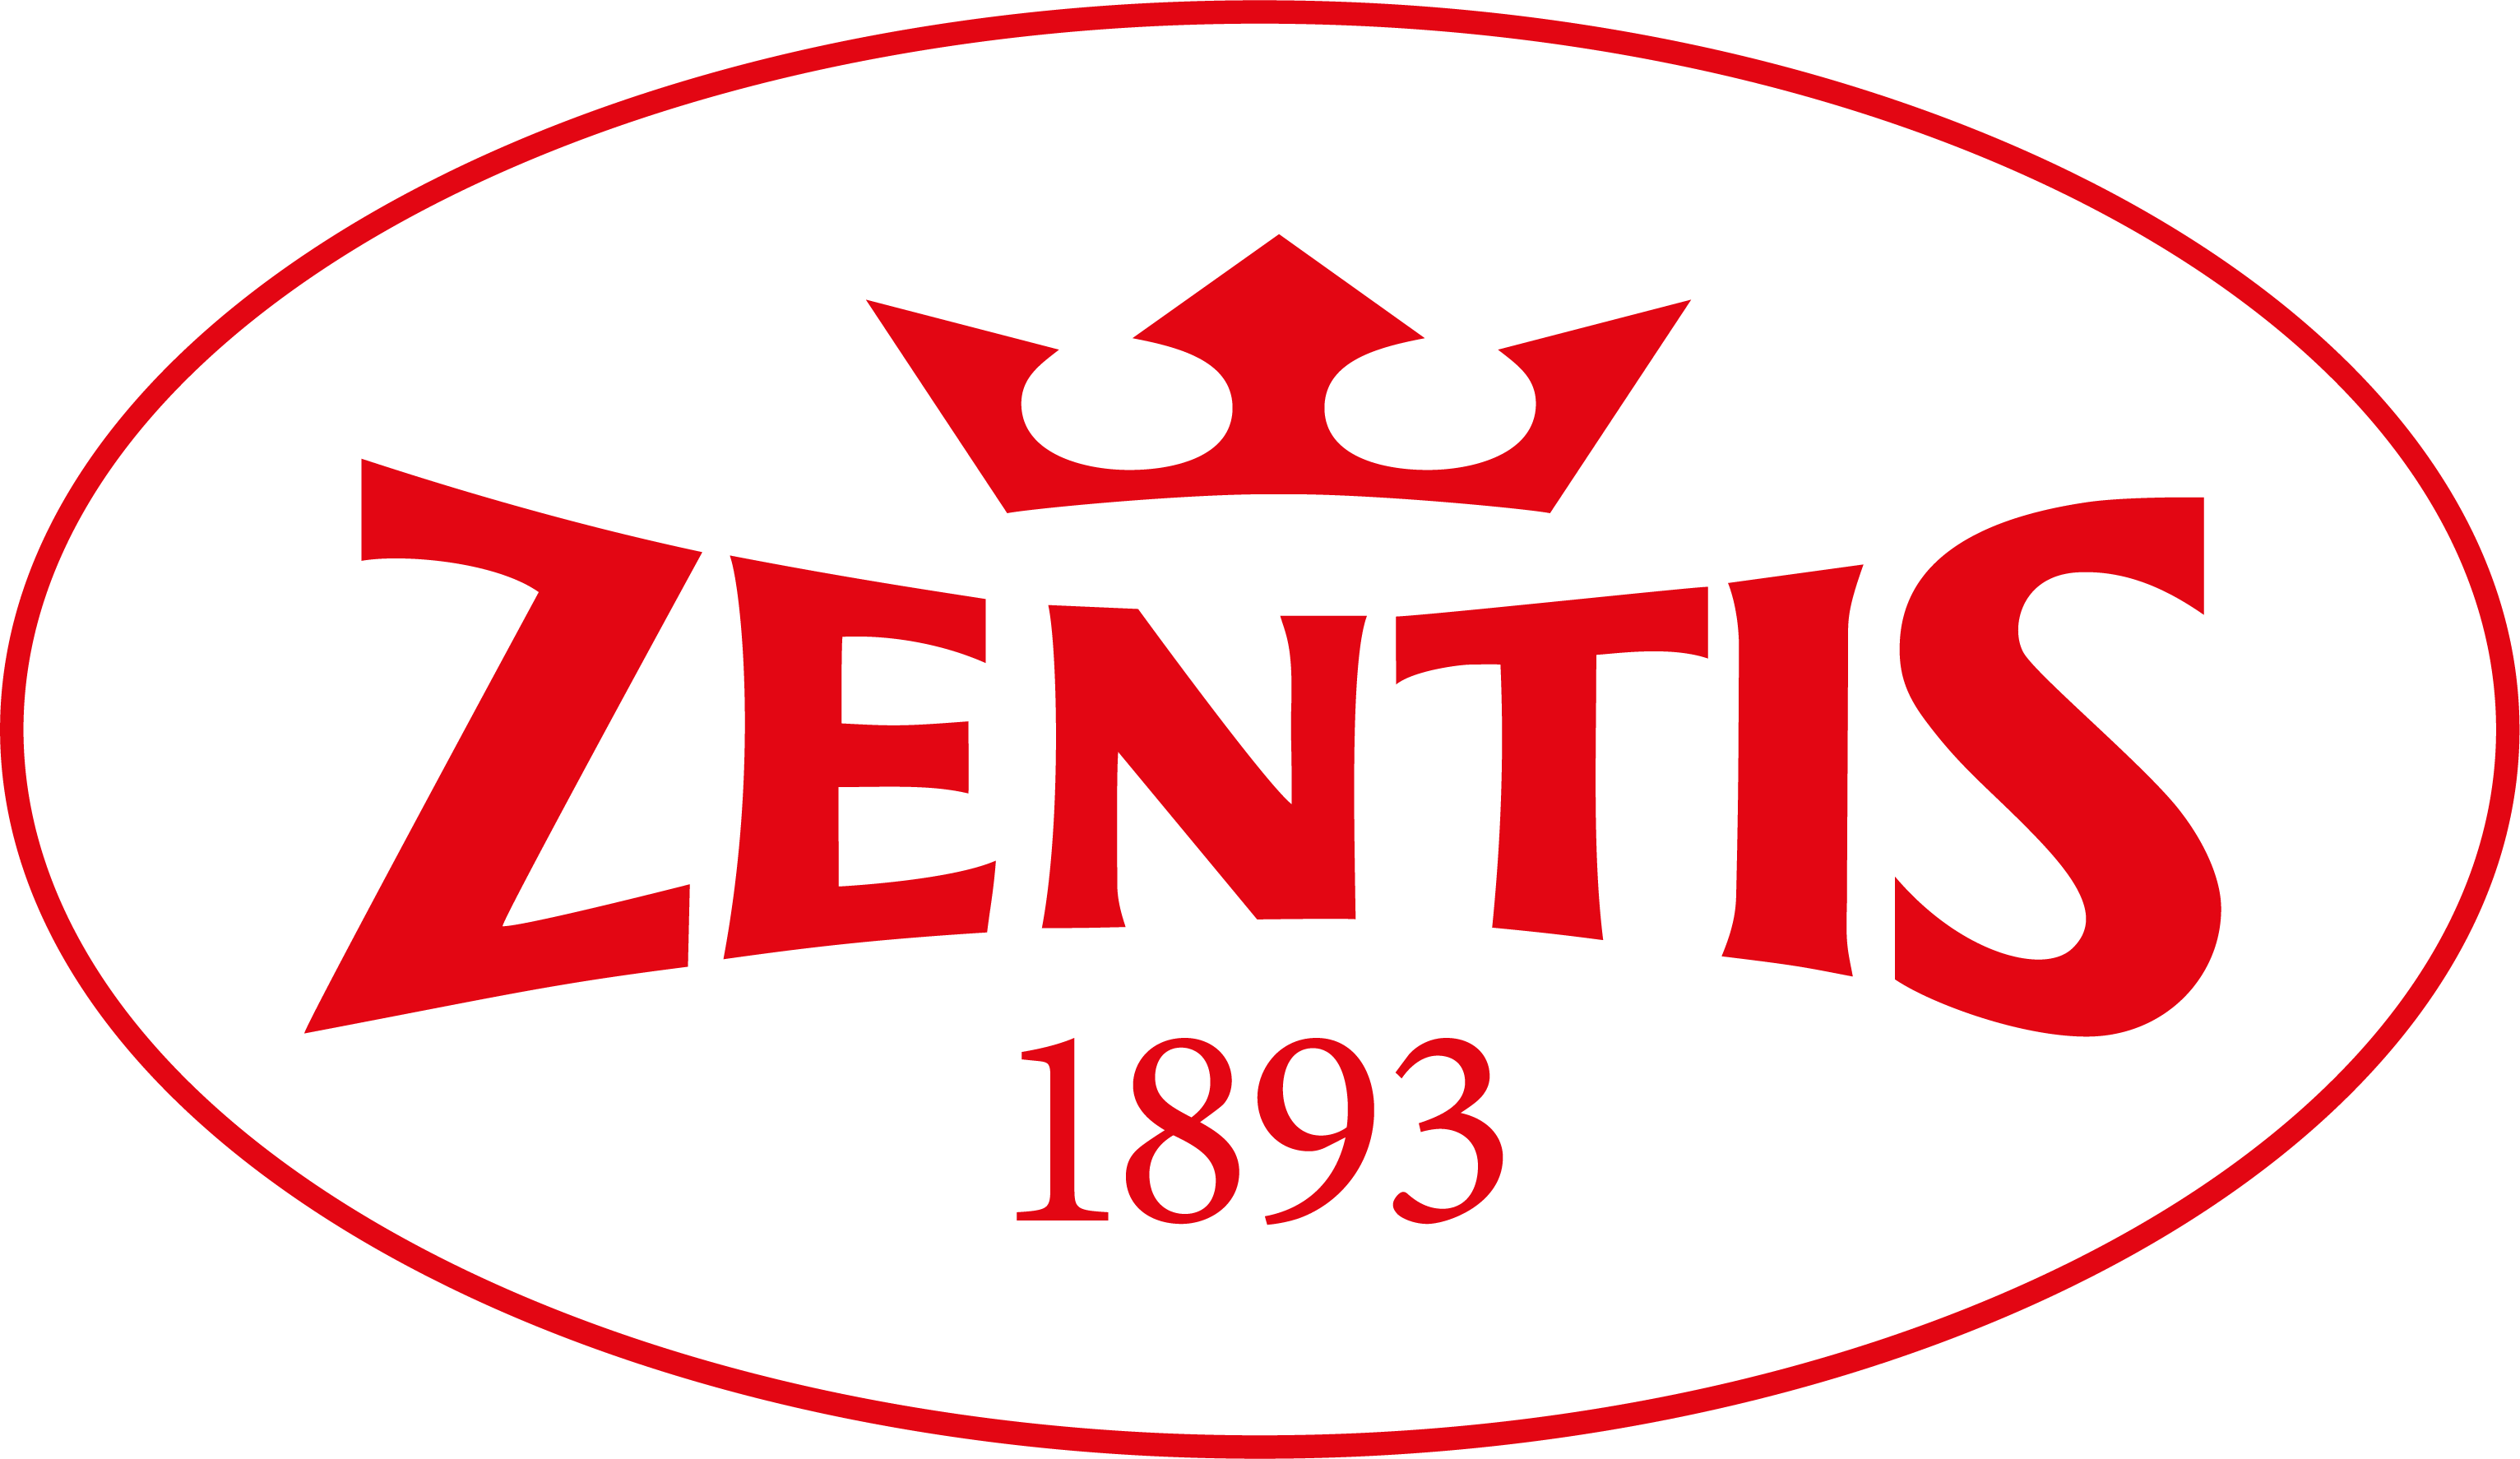 Zentis logo_CMYK_CS4